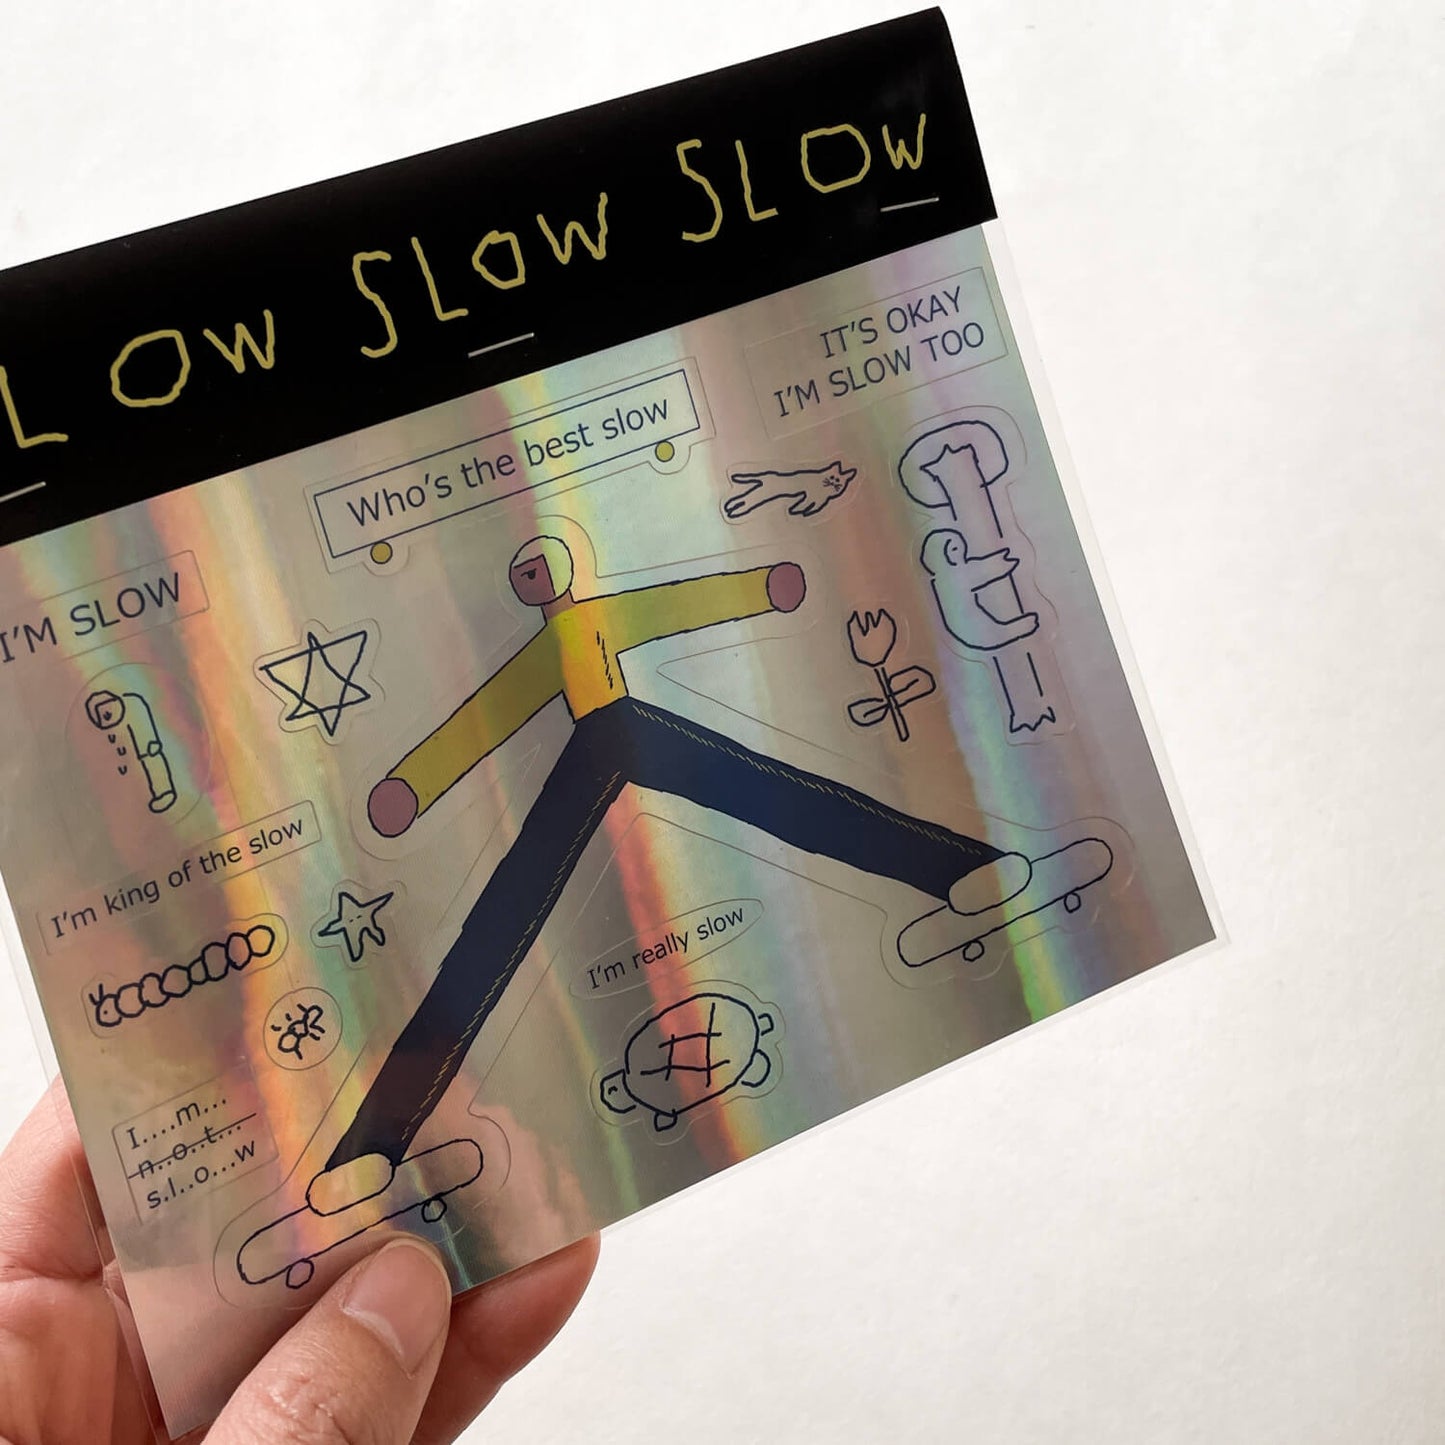 Sticker Sheet - slow slow slow